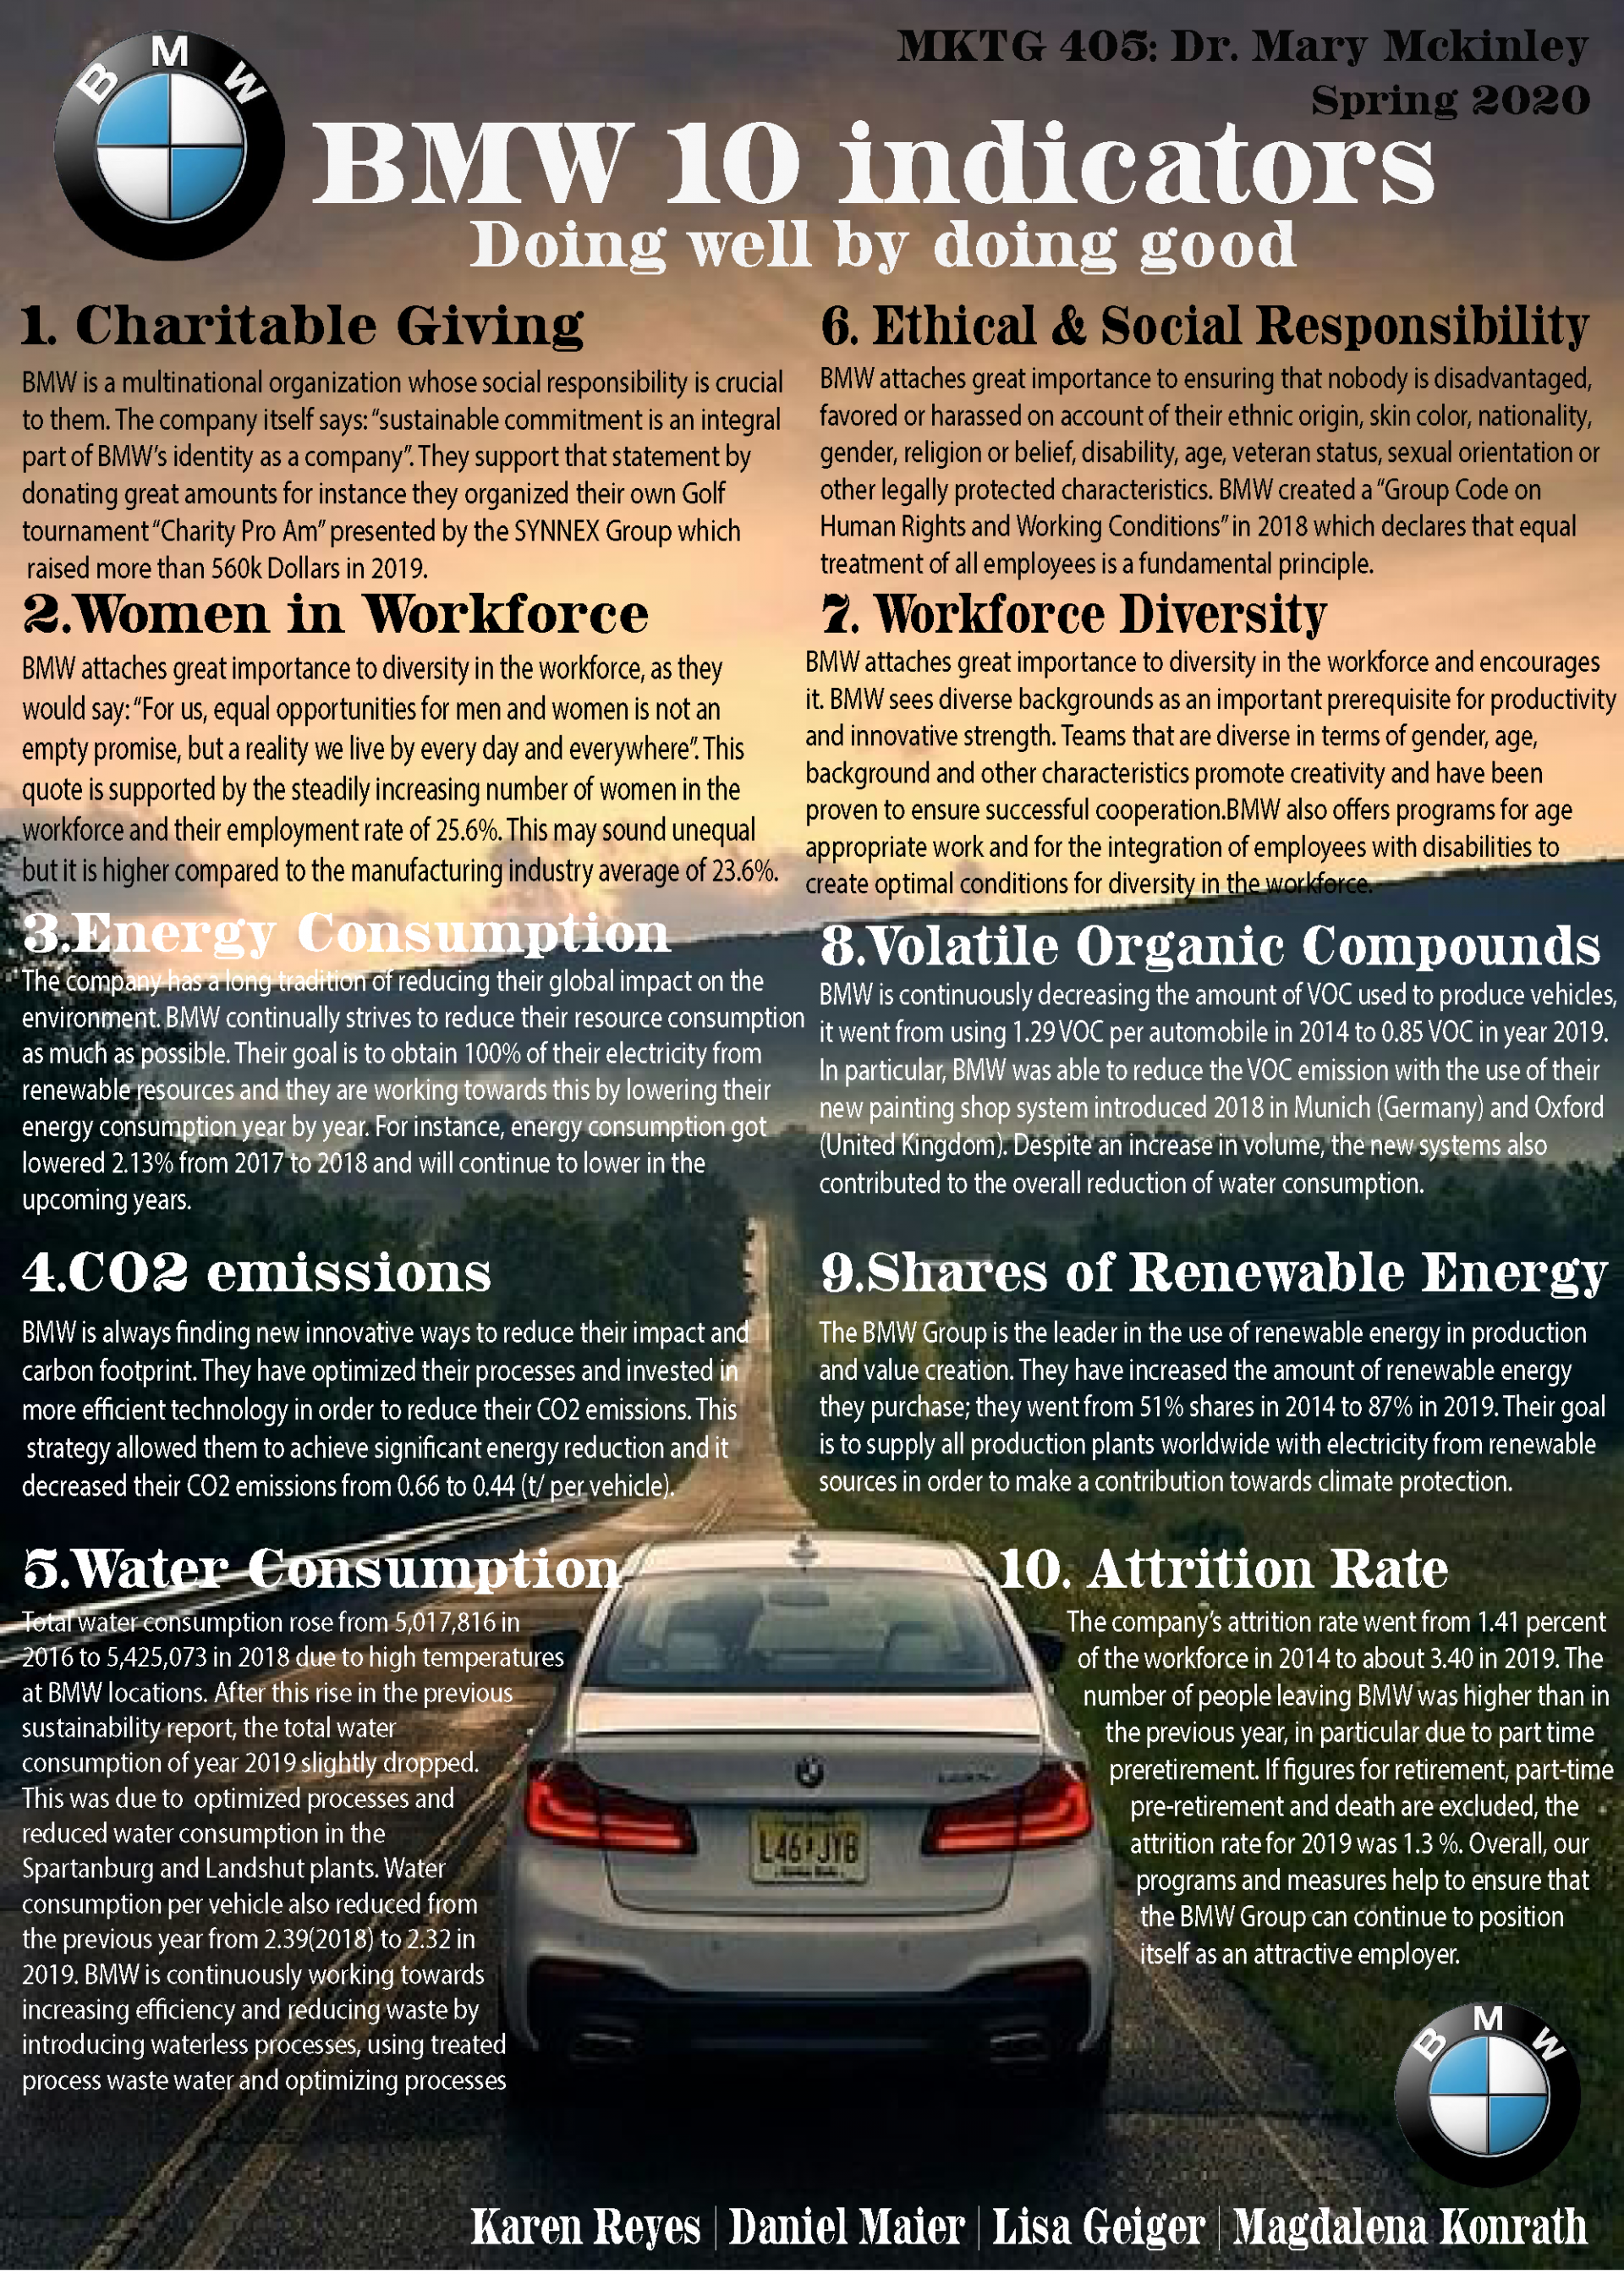 BMW Sustainability Indicators